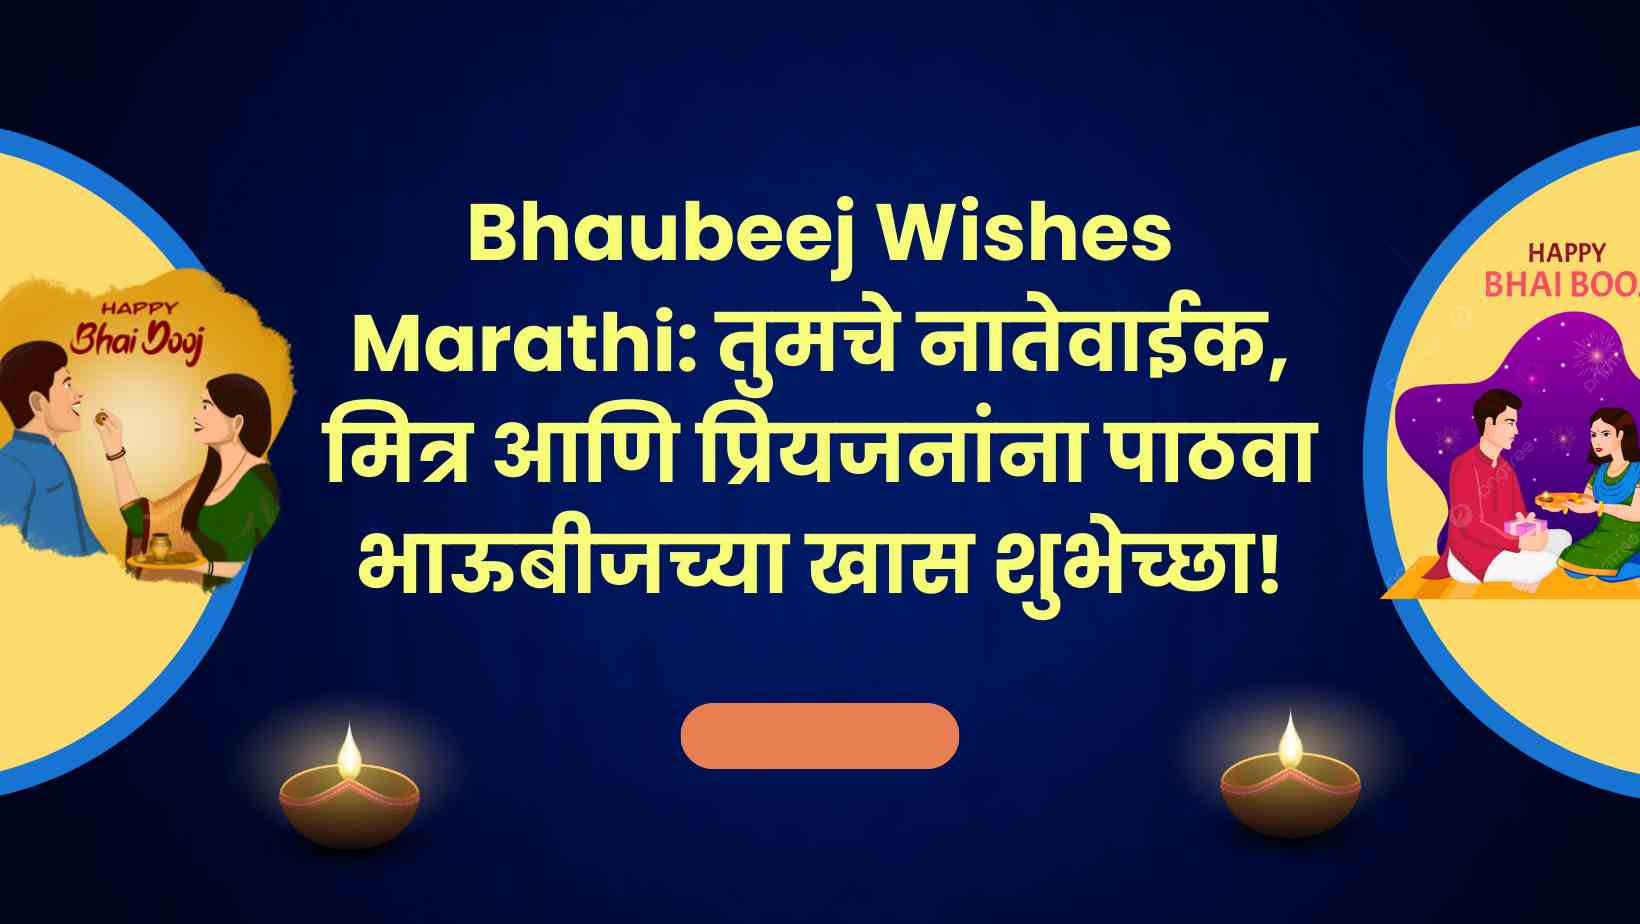 Bhaubeej Wishes: तुमचे नातेवाईक, मित्र आणि प्रियजनांना पाठवा 'भाऊबीज'च्या खास शुभेच्छा!